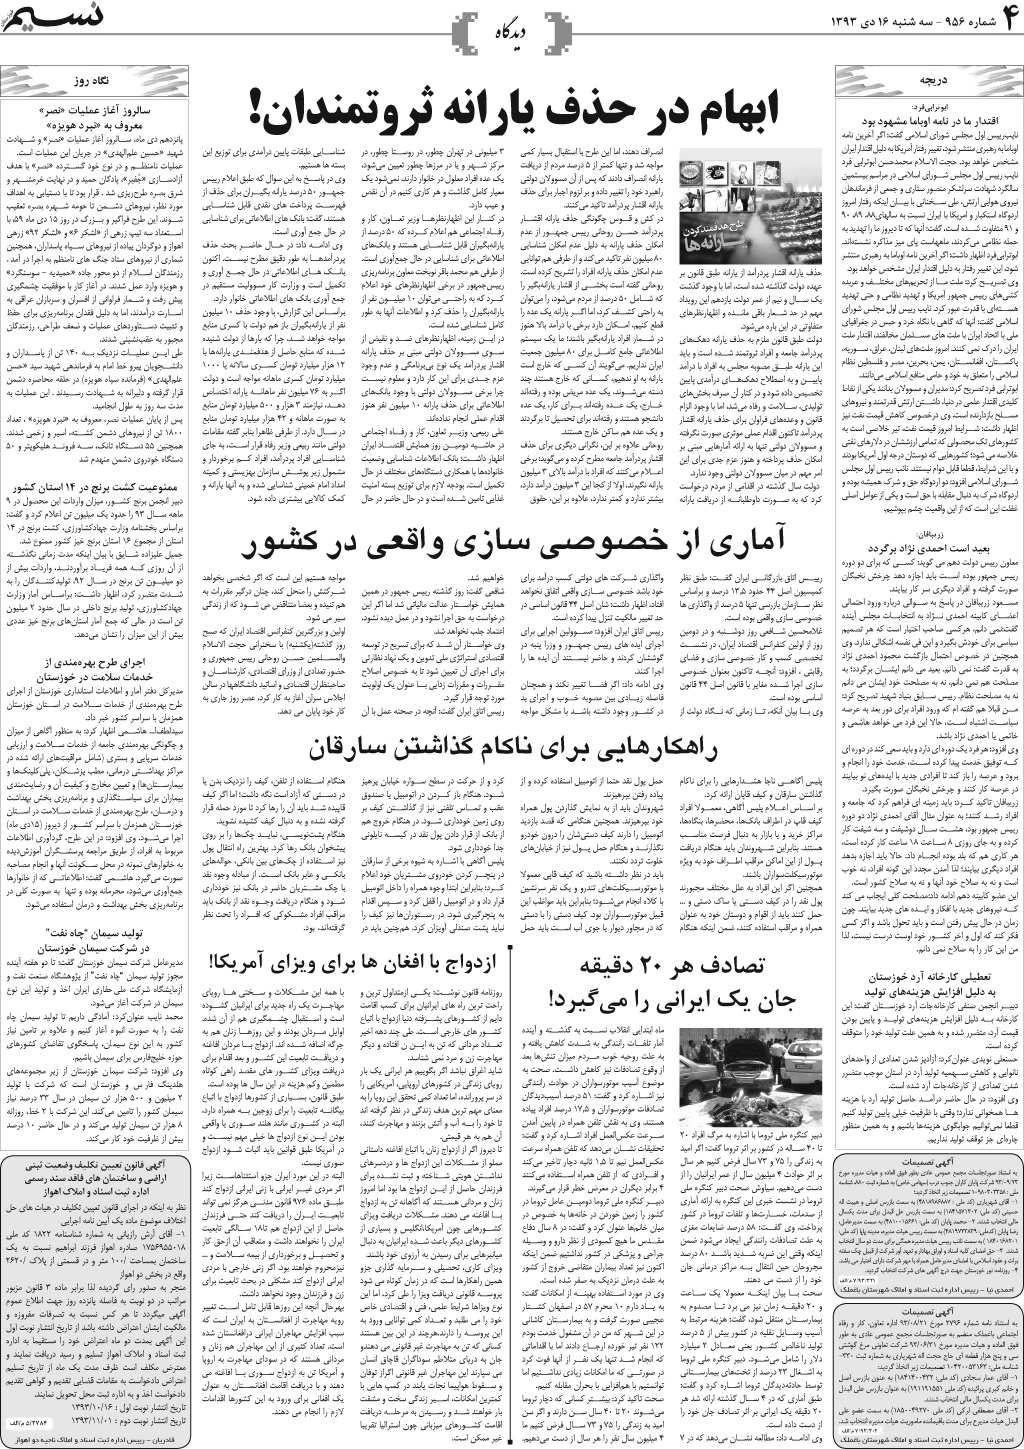 صفحه دیدگاه روزنامه نسیم شماره 956